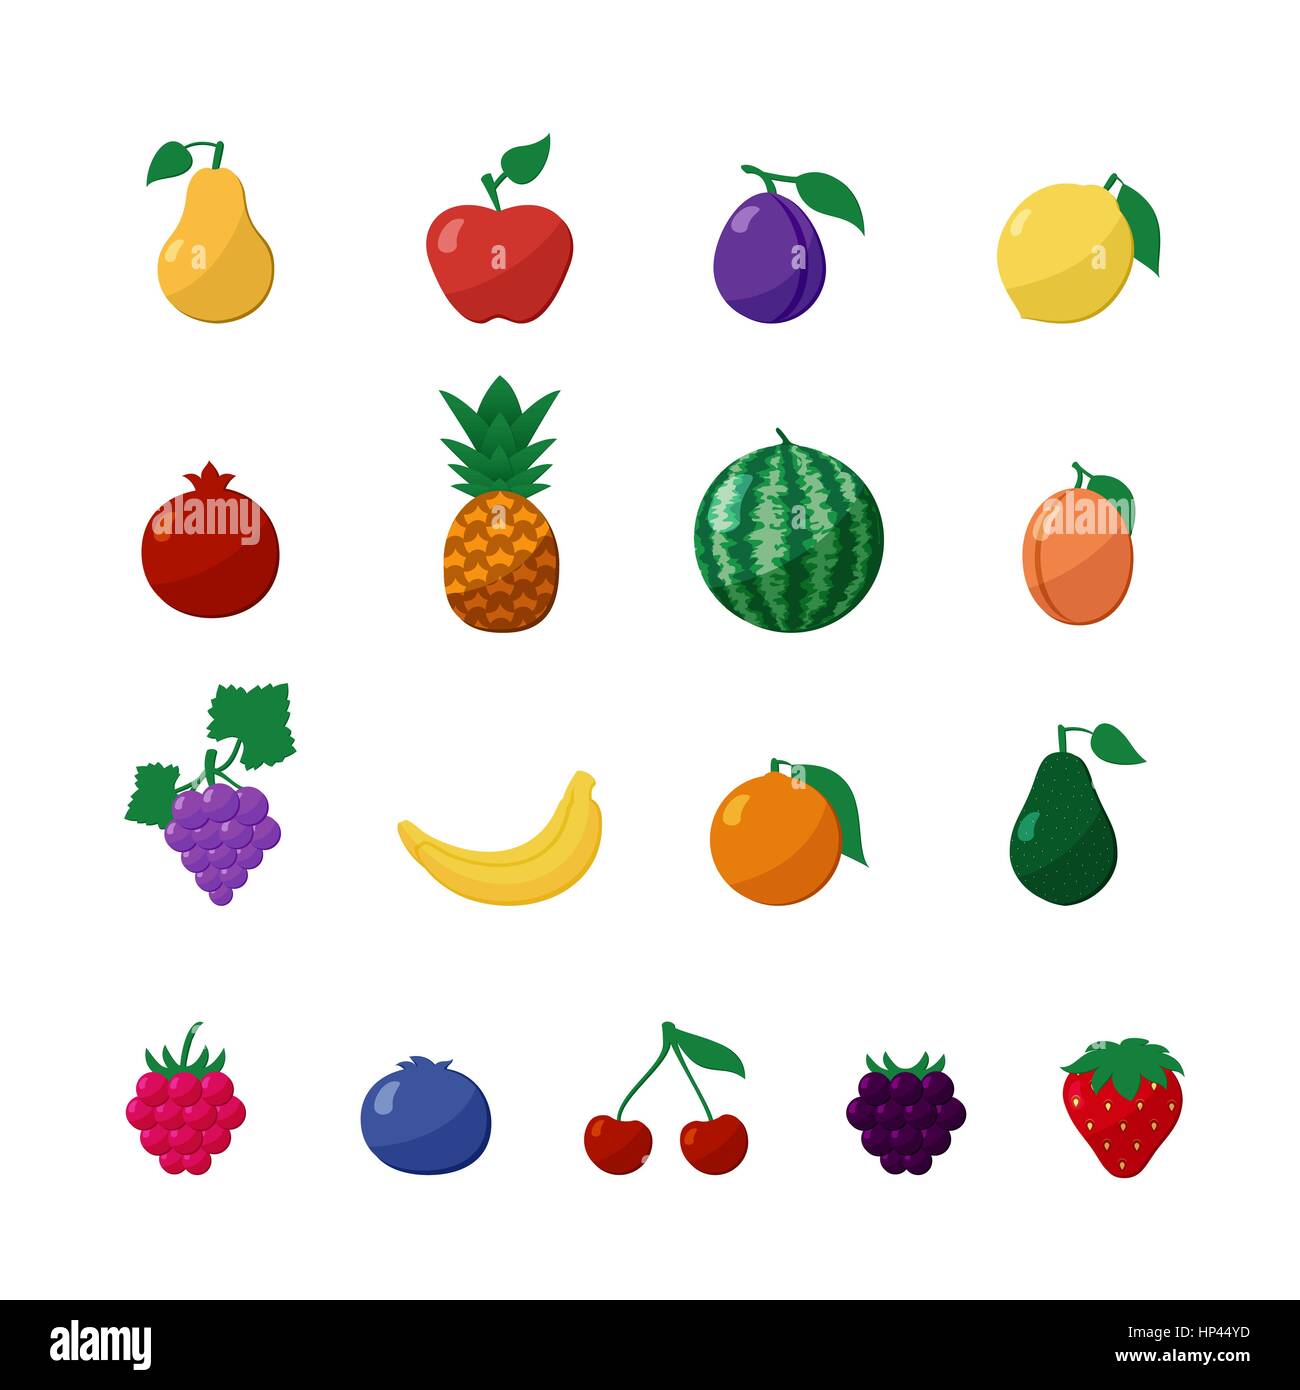 Vector Icons Fruits et de baies dans un style plat Set Isolated over White avec pomme, poire, banane, citron, cerise, fraise, framboise, myrtille, noir Illustration de Vecteur